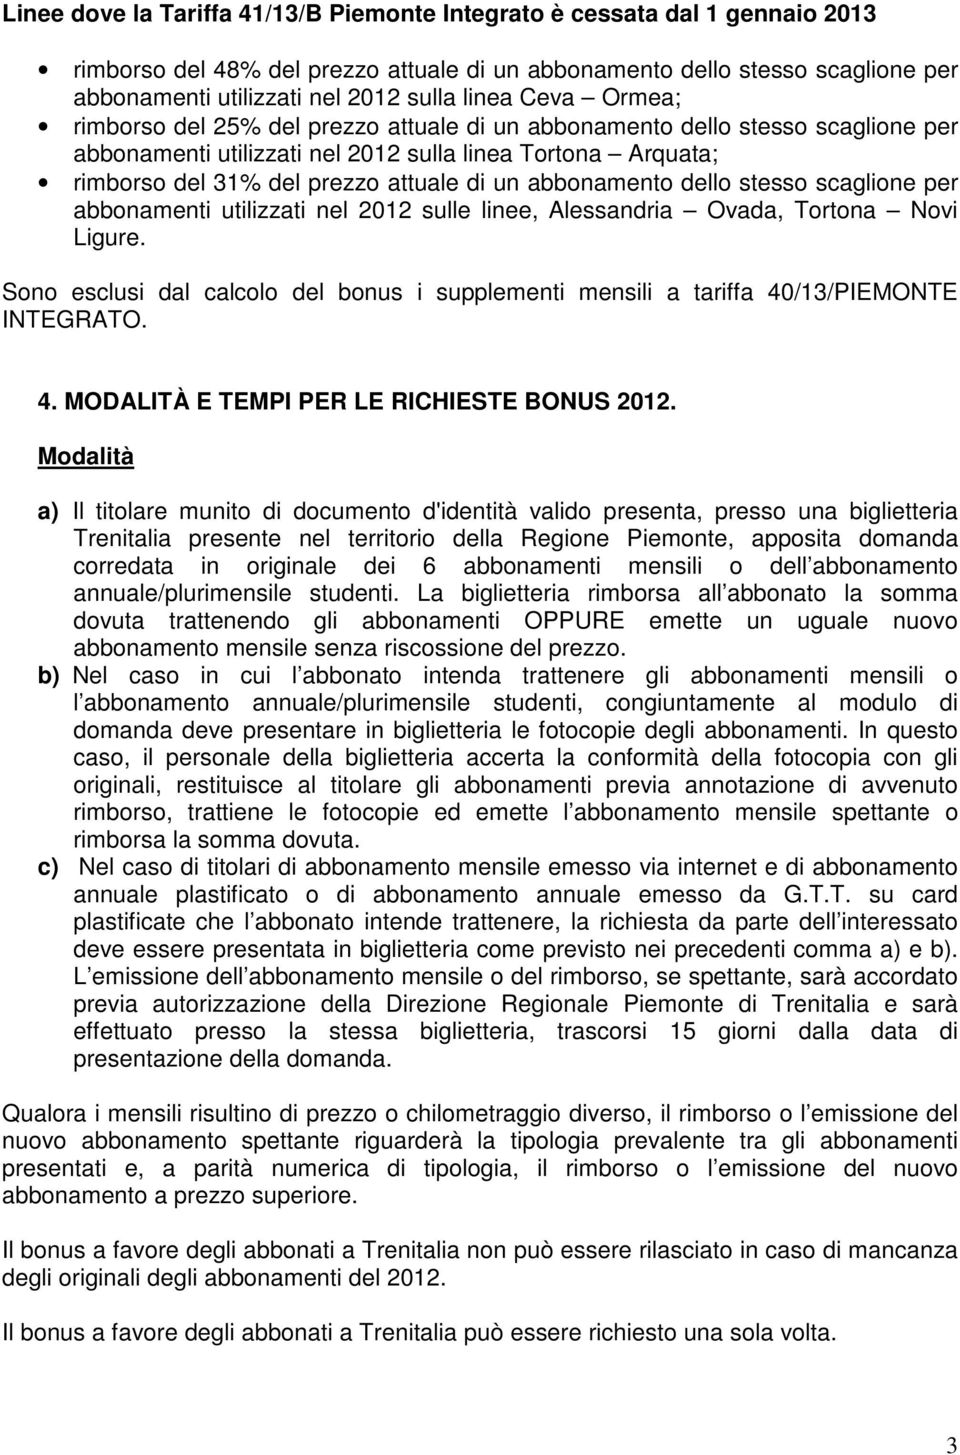 un abbonamento dello stesso scaglione per abbonamenti utilizzati nel 2012 sulle linee, Alessandria Ovada, Tortona Novi Ligure.